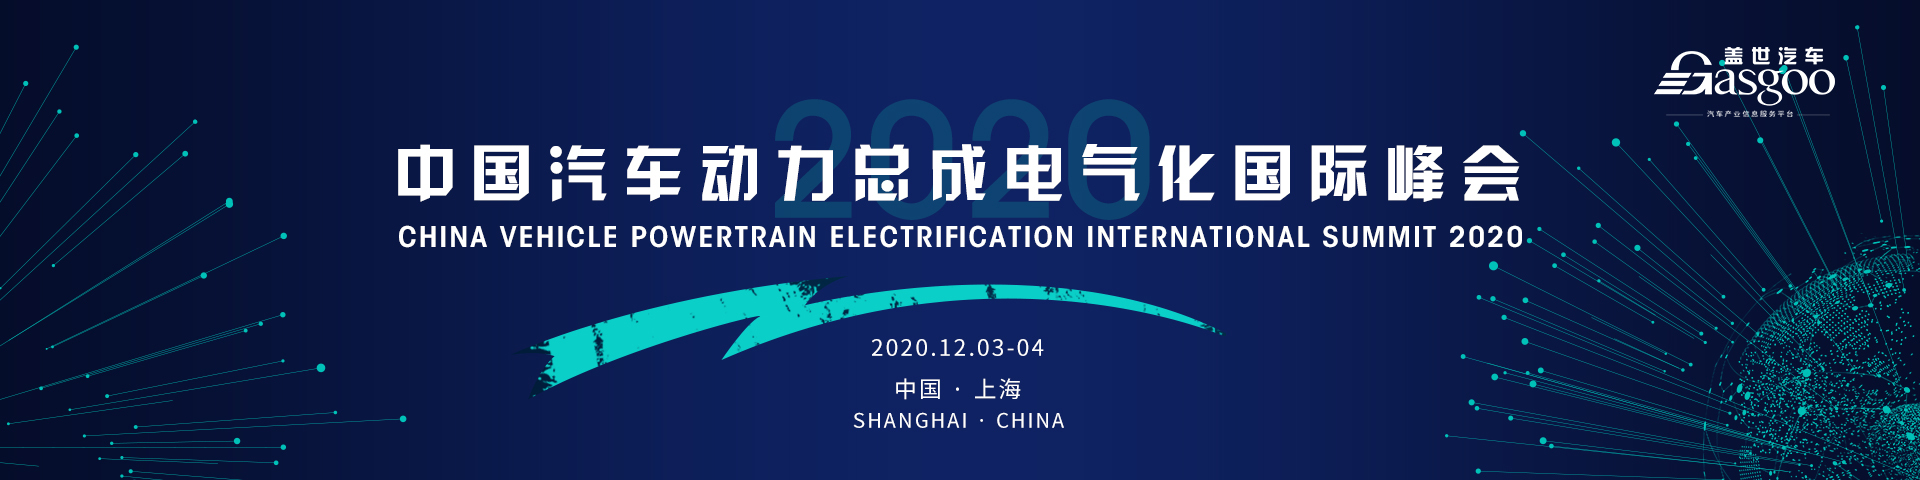 China Vehicle Powertrain Electrification International Summit 2020